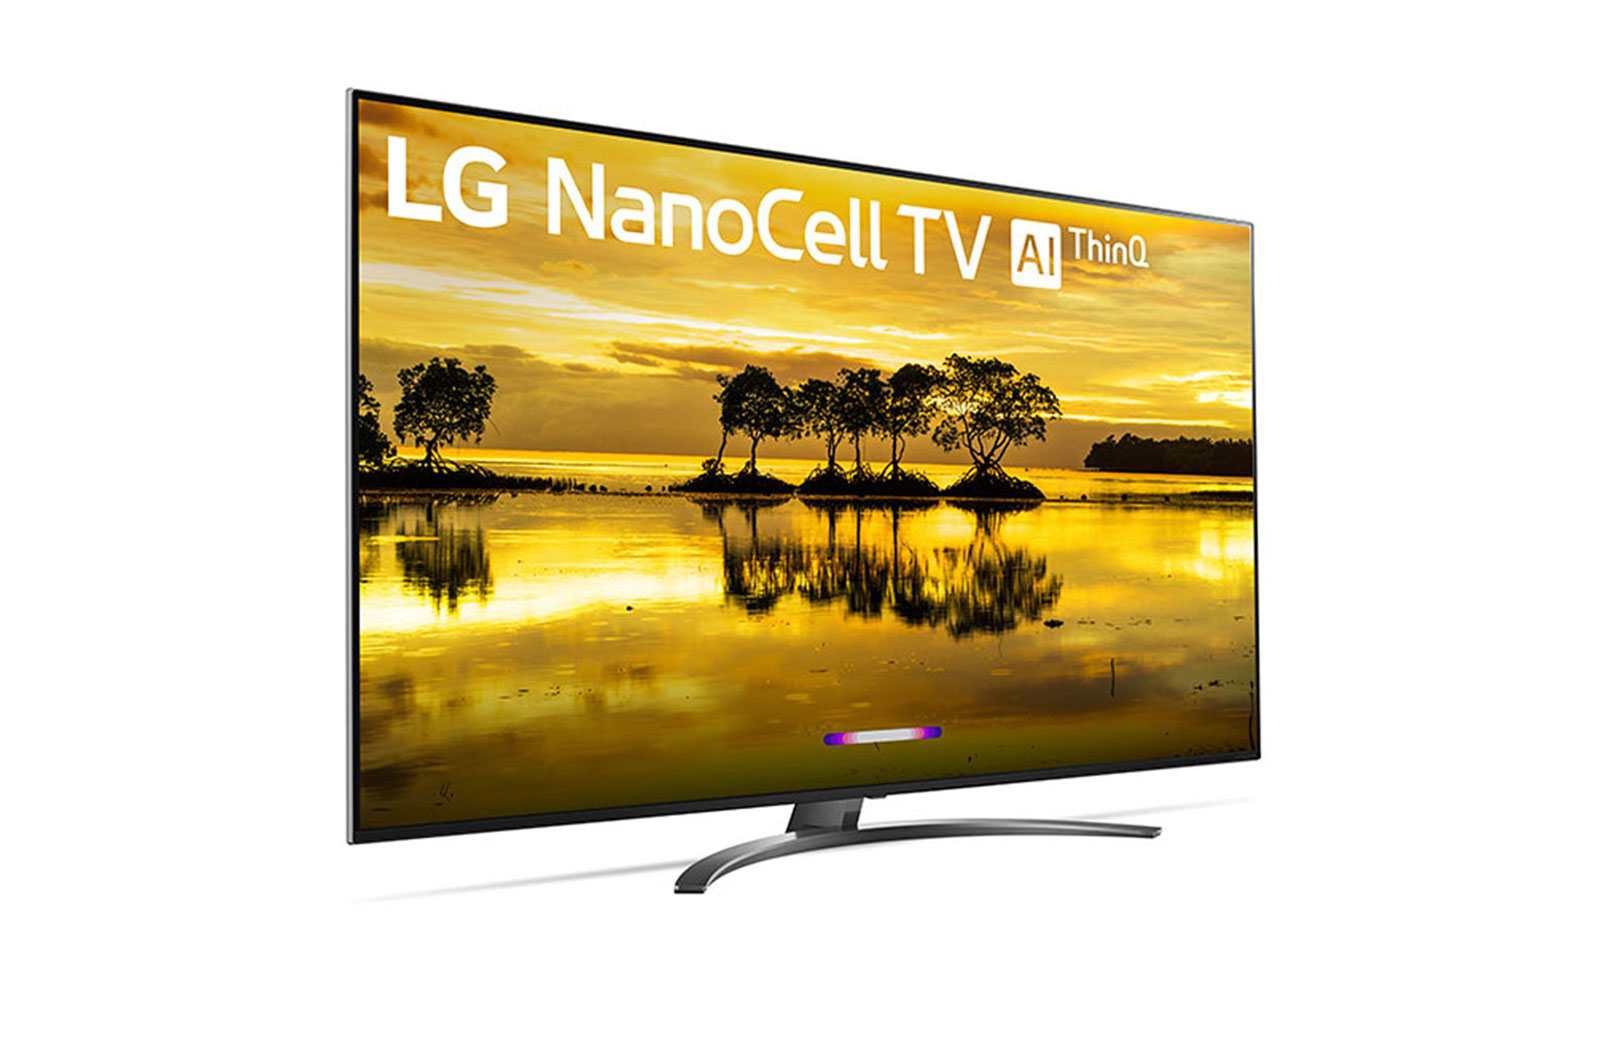 Телевизор lg nano cell